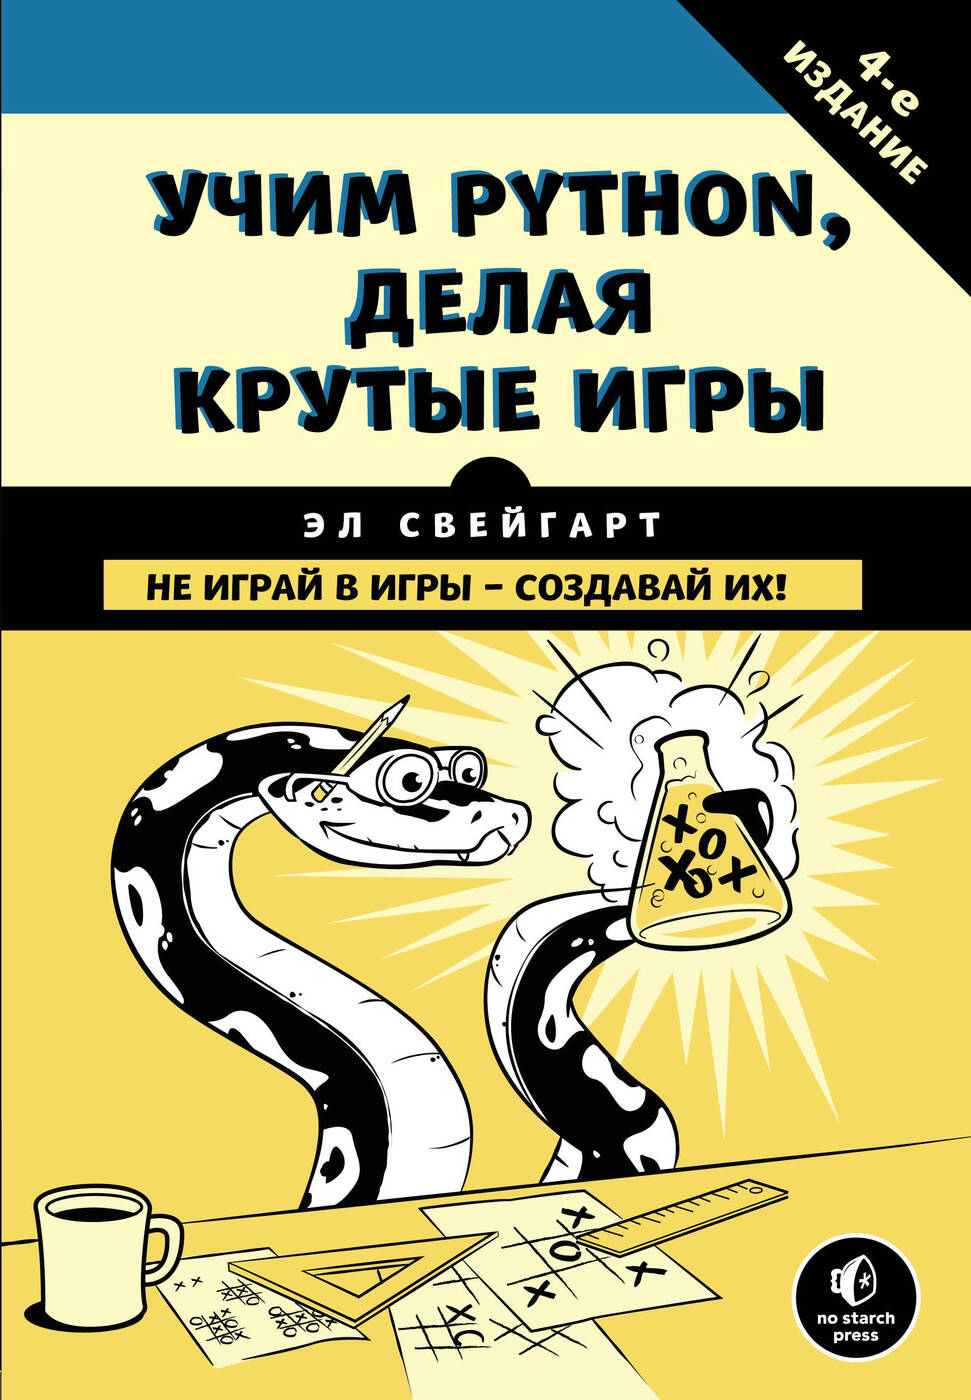 Обложка книги Учим Python, делая крутые игры (Свейгарт Эл)